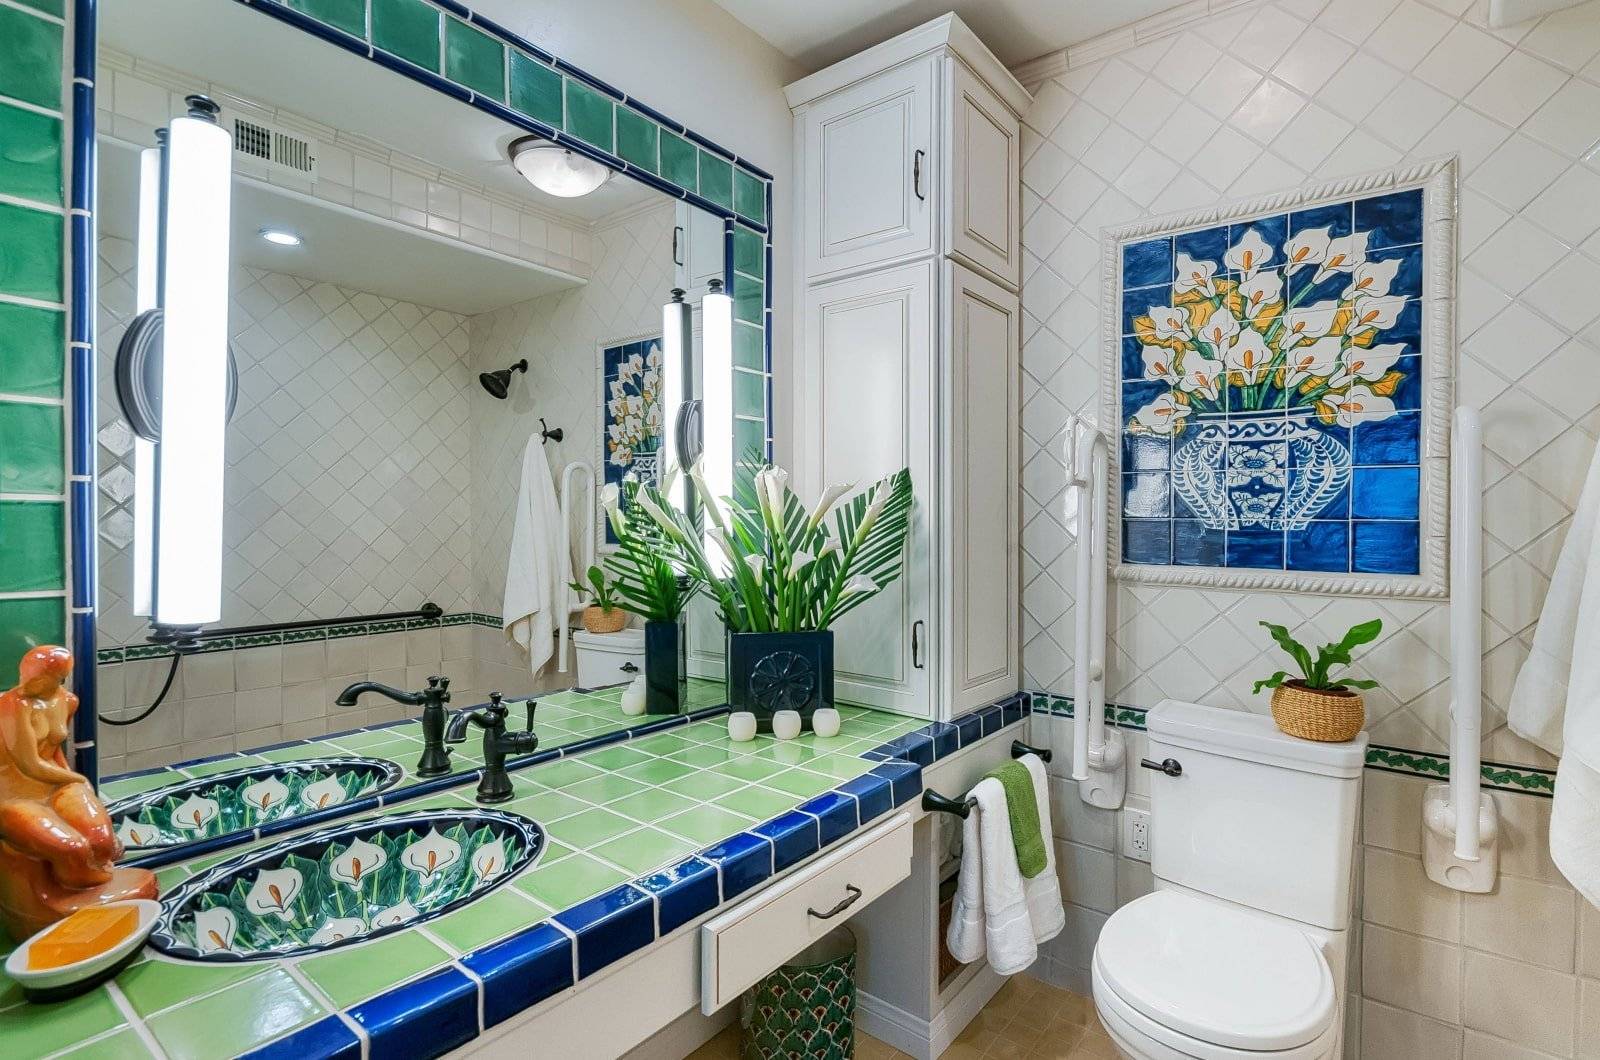 Стиль для ванной комнаты – какой выбрать? ищем гармоничные решения - интерьерные штучки